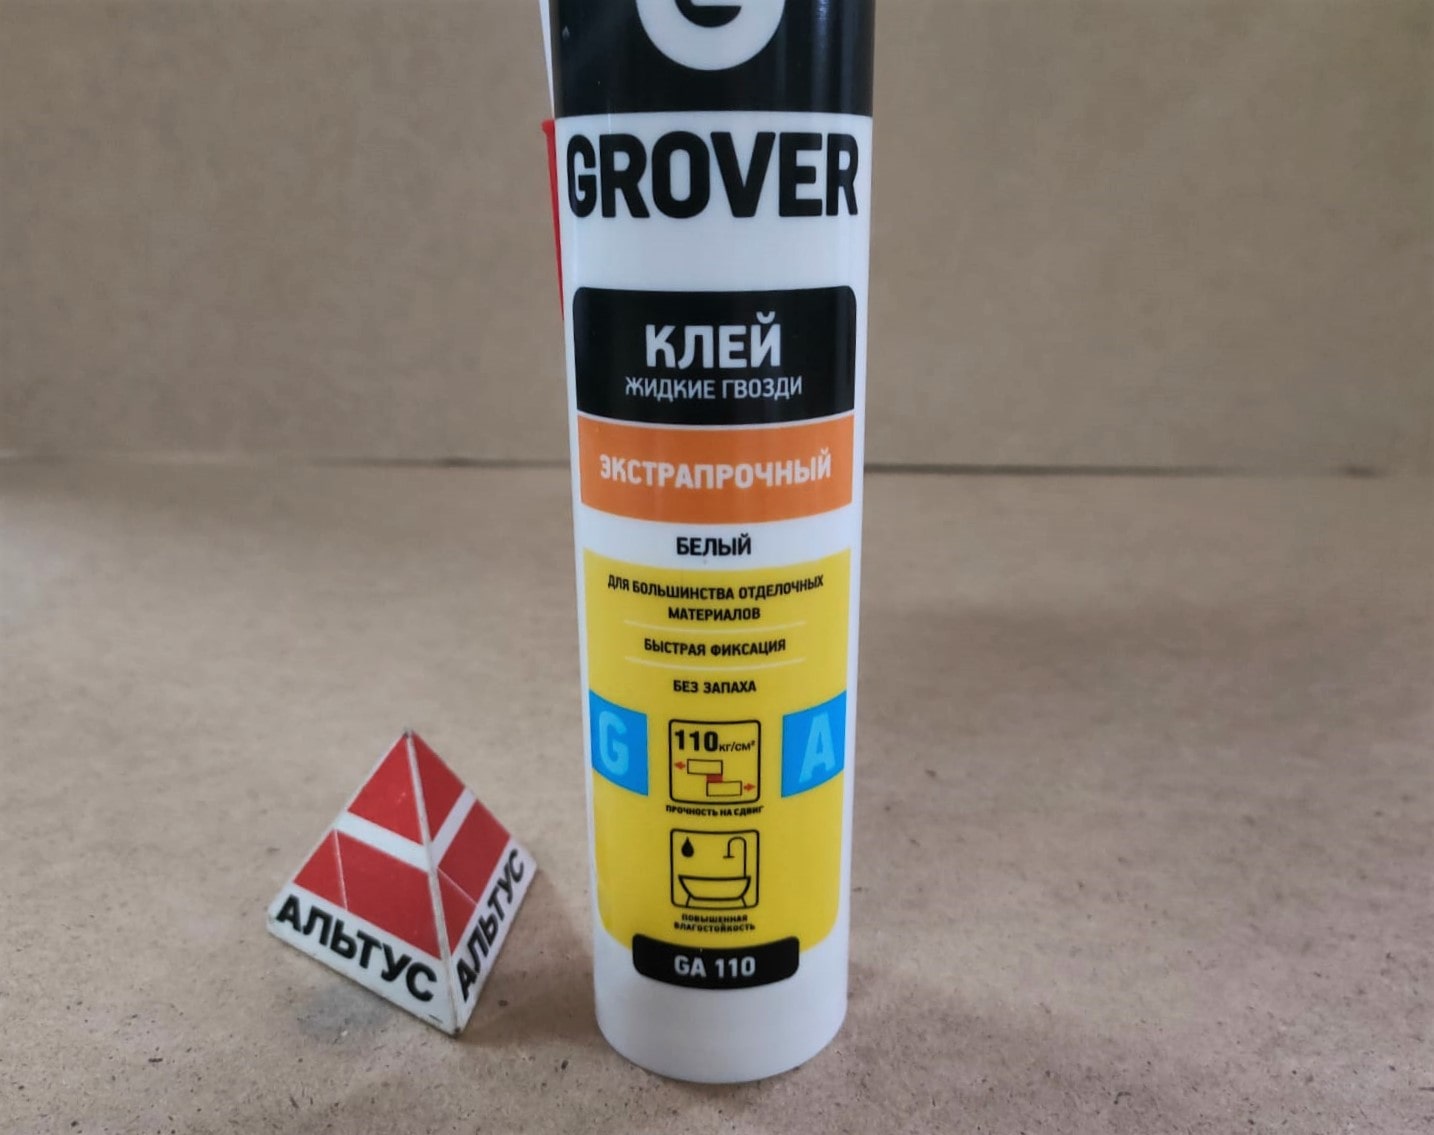 Клей жидкие гвозди Grover GA110 экстрапрочный, белый 280 мл								